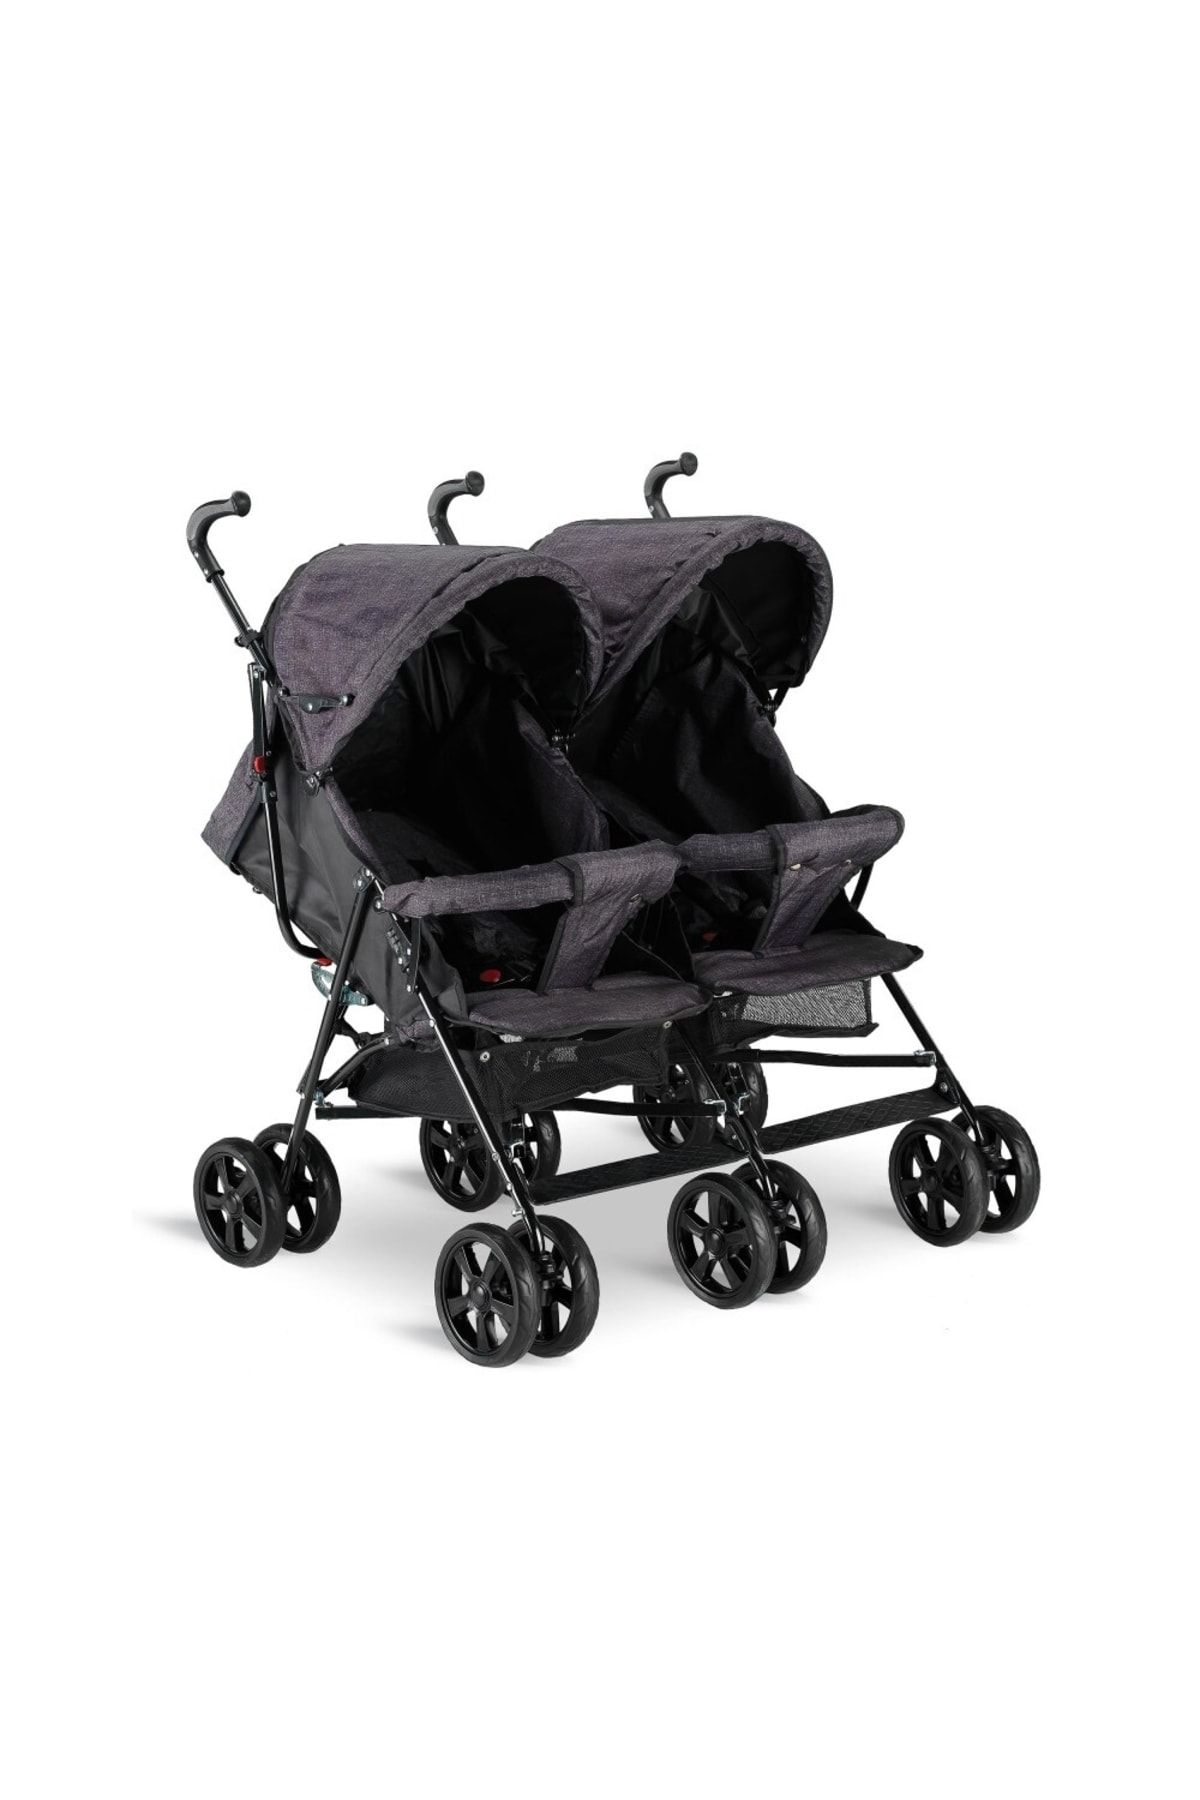 Babyhope Siyah Kırçıllı Ikiz Baston Bebek Arabası Bh-610